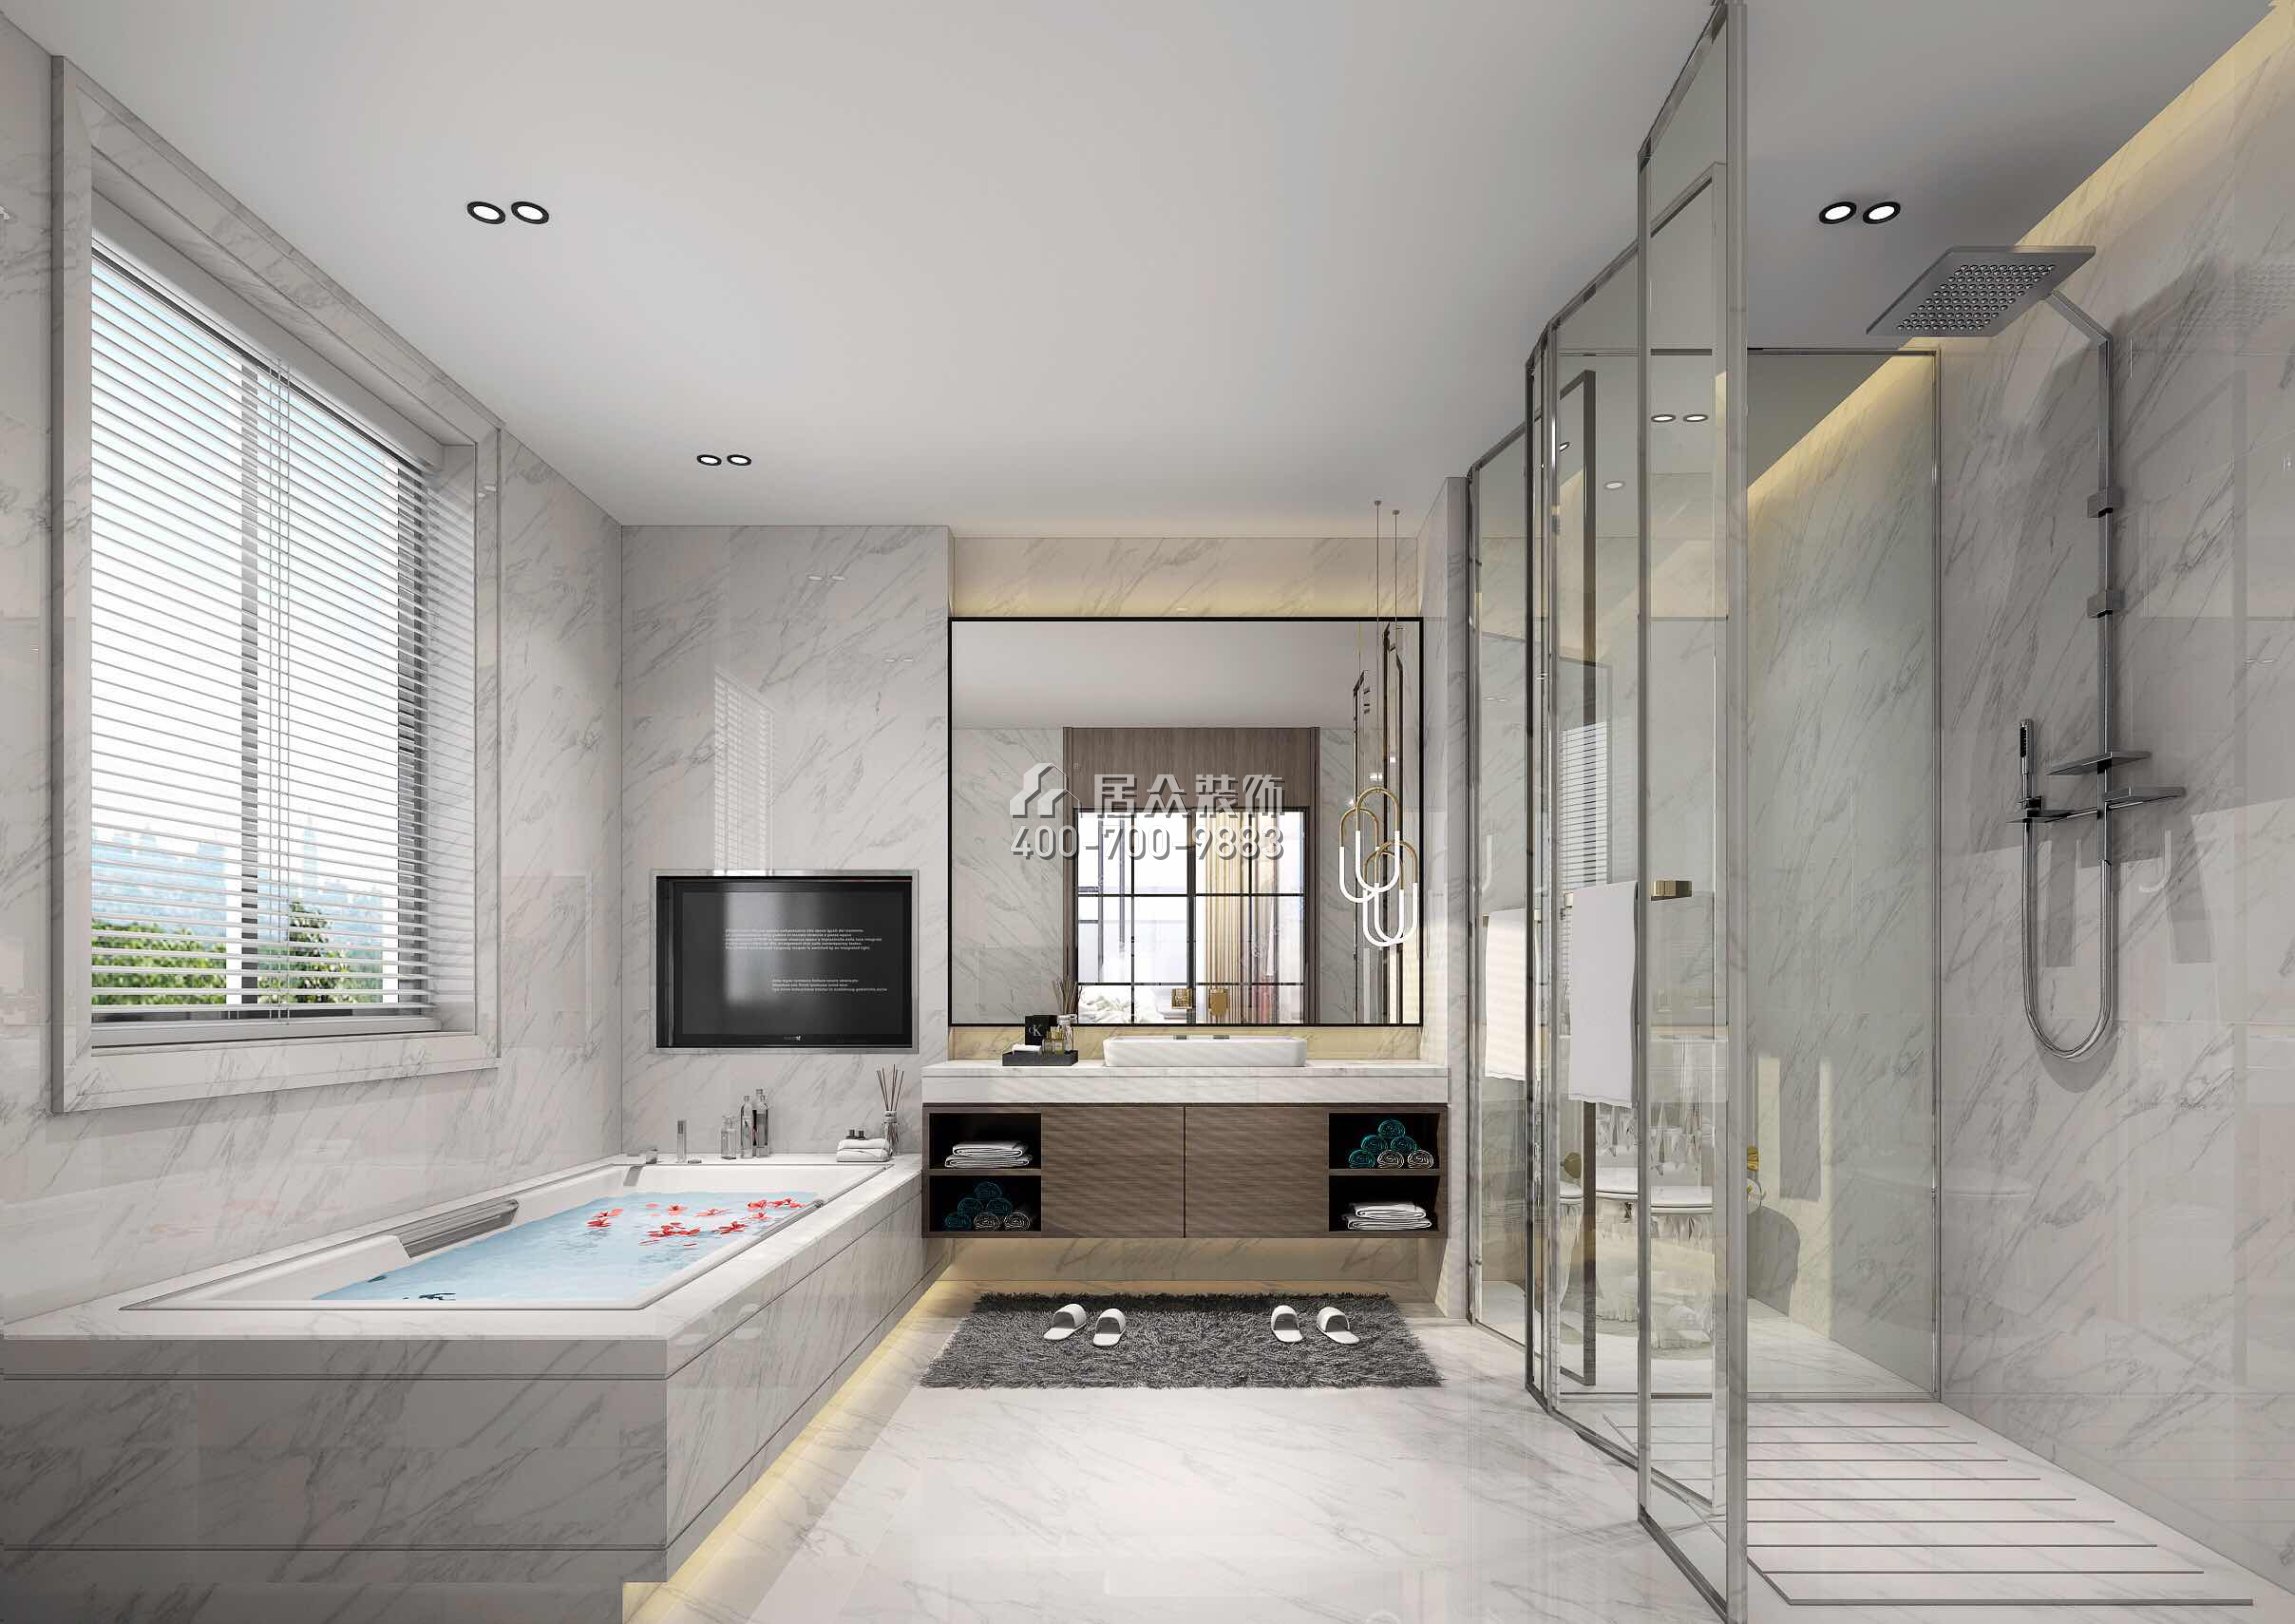 海逸豪庭321平方米現代簡約風格別墅戶型衛生間裝修效果圖